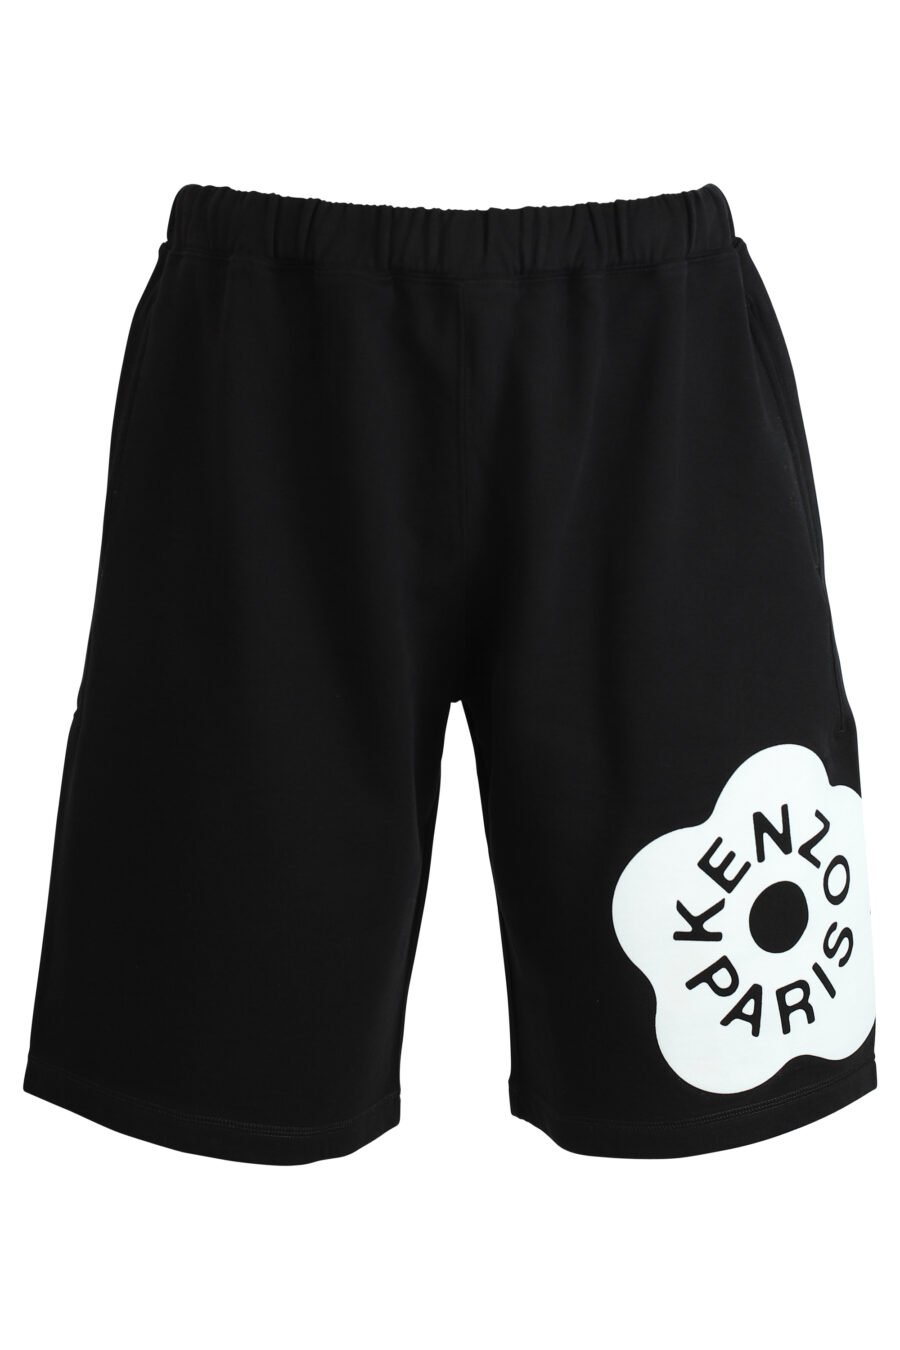 Pantalón de chándal negro corto con logo "boke flower" - Photos 182